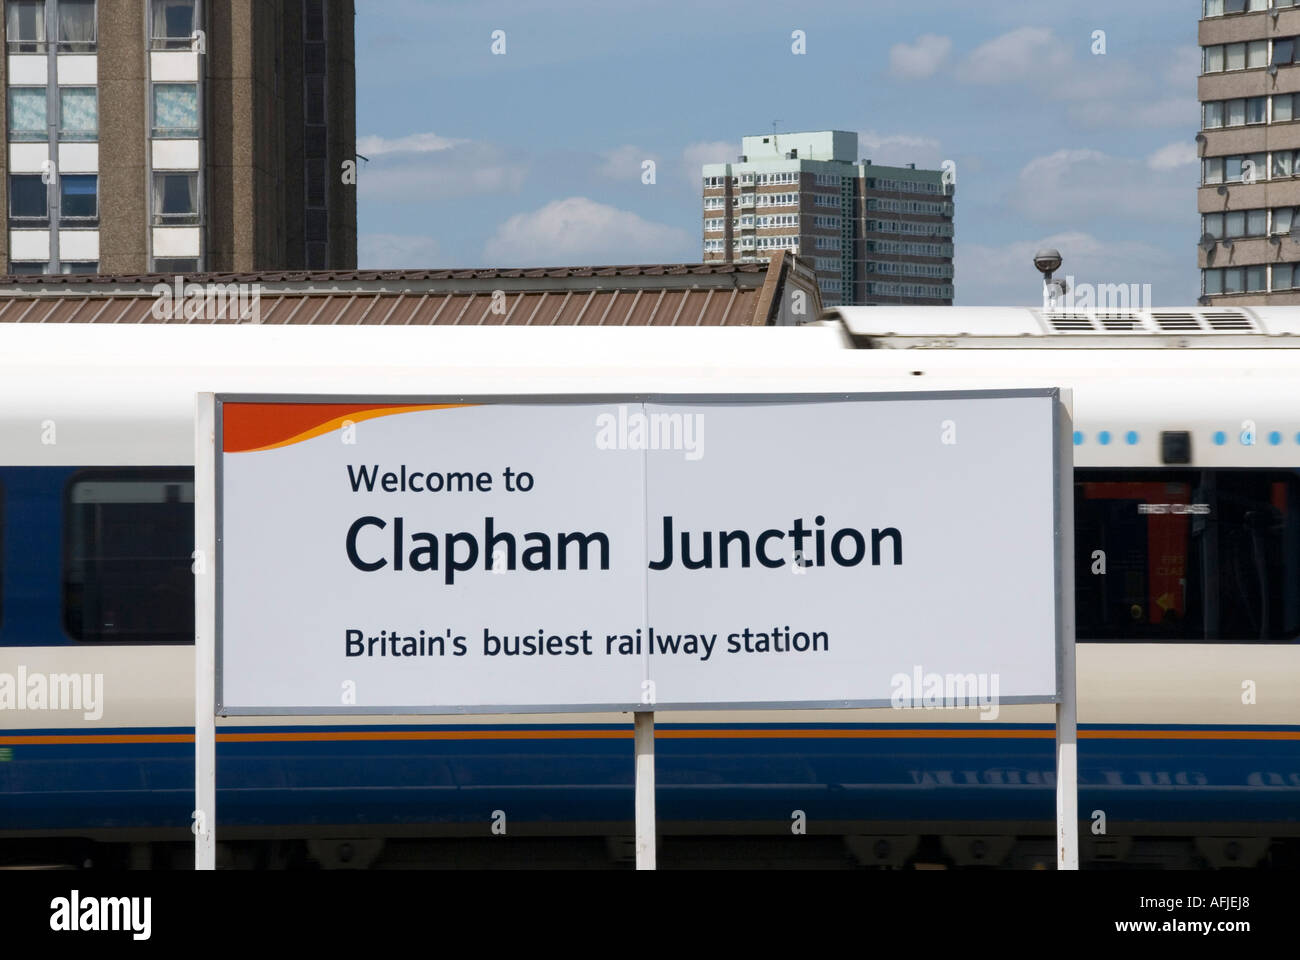 Bahnhof Clapham Junction mit Zeichen Zug Vergangenheit und hohe Aufstieg Wohnungen darüber hinaus zu beschleunigen Stockfoto